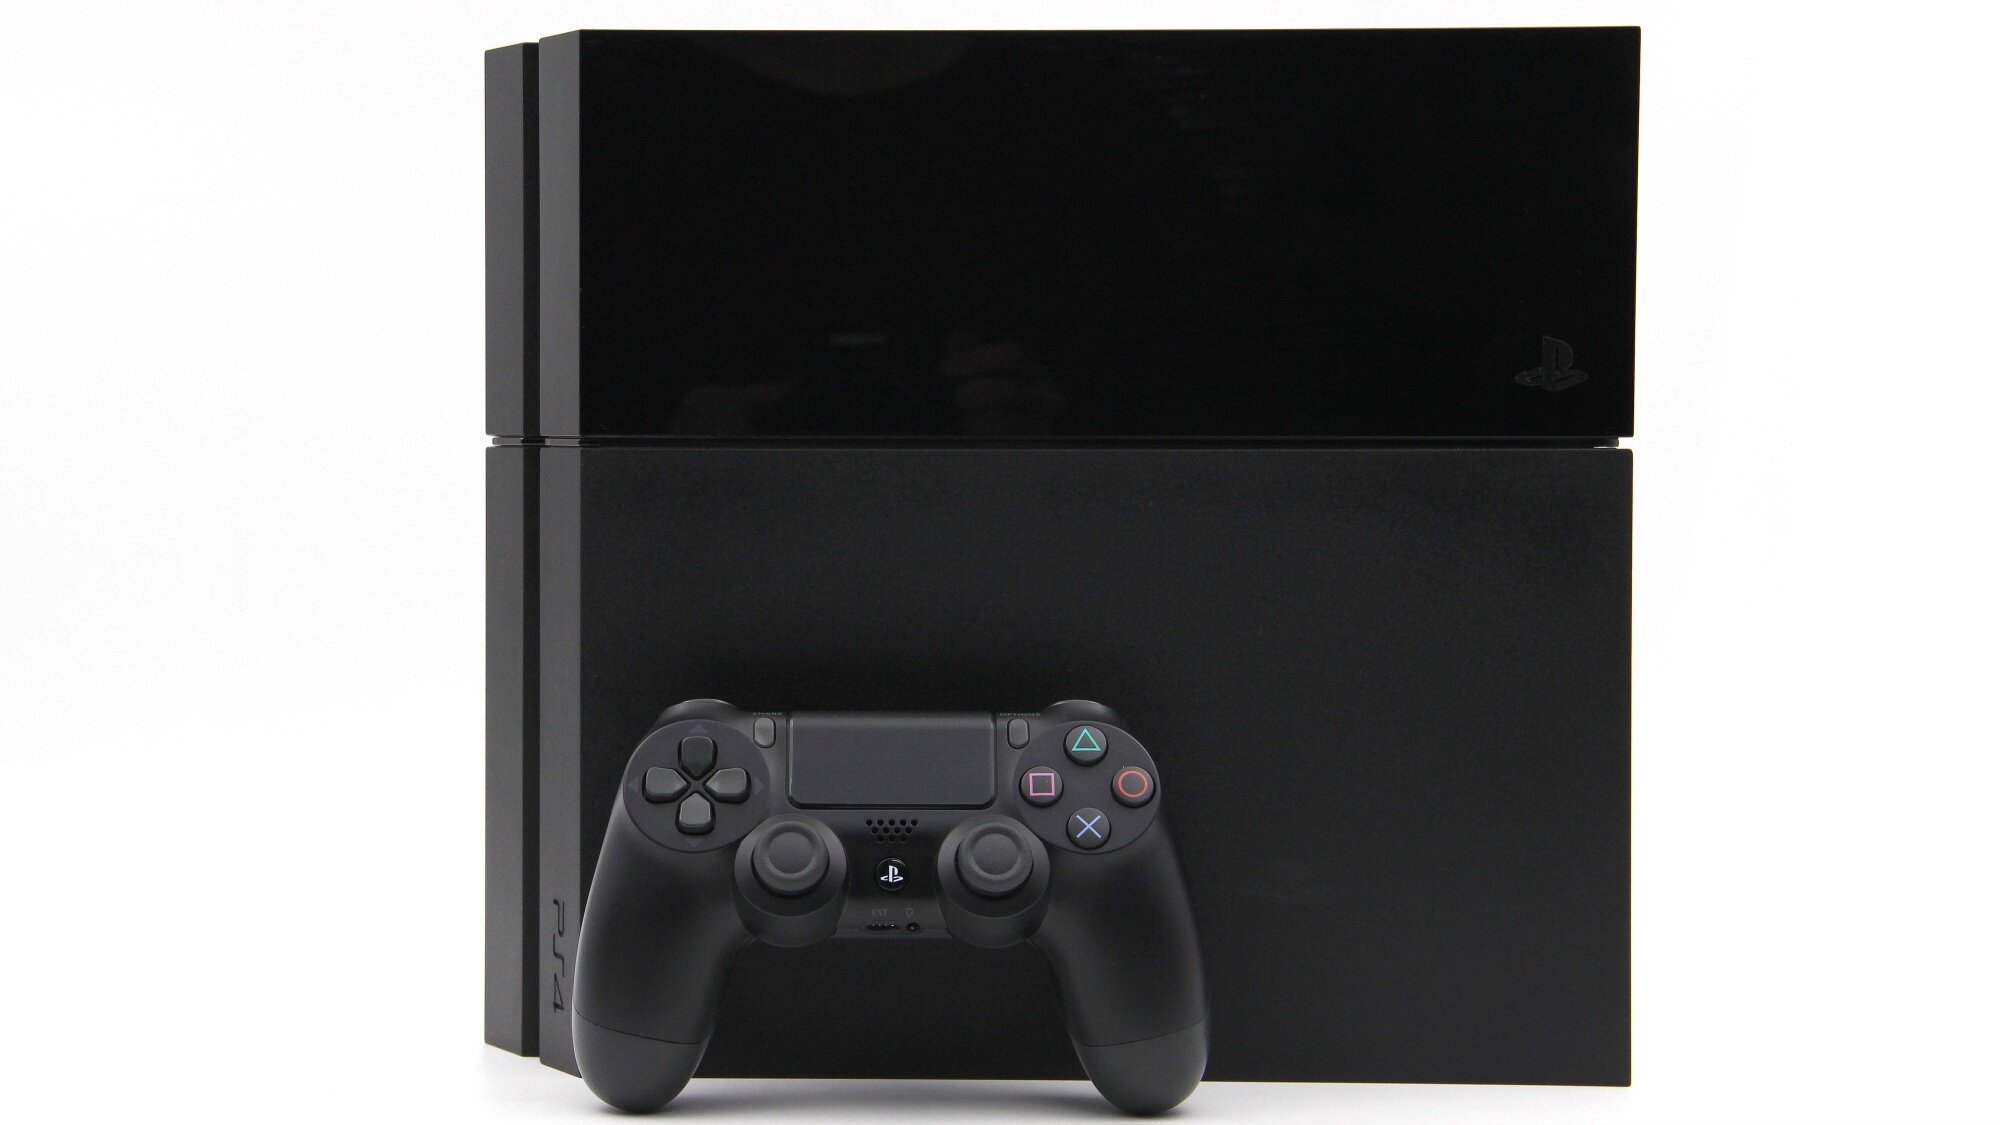 Игровая приставка Sony PlayStation 4 500 ГБ HDD, без игр, черный